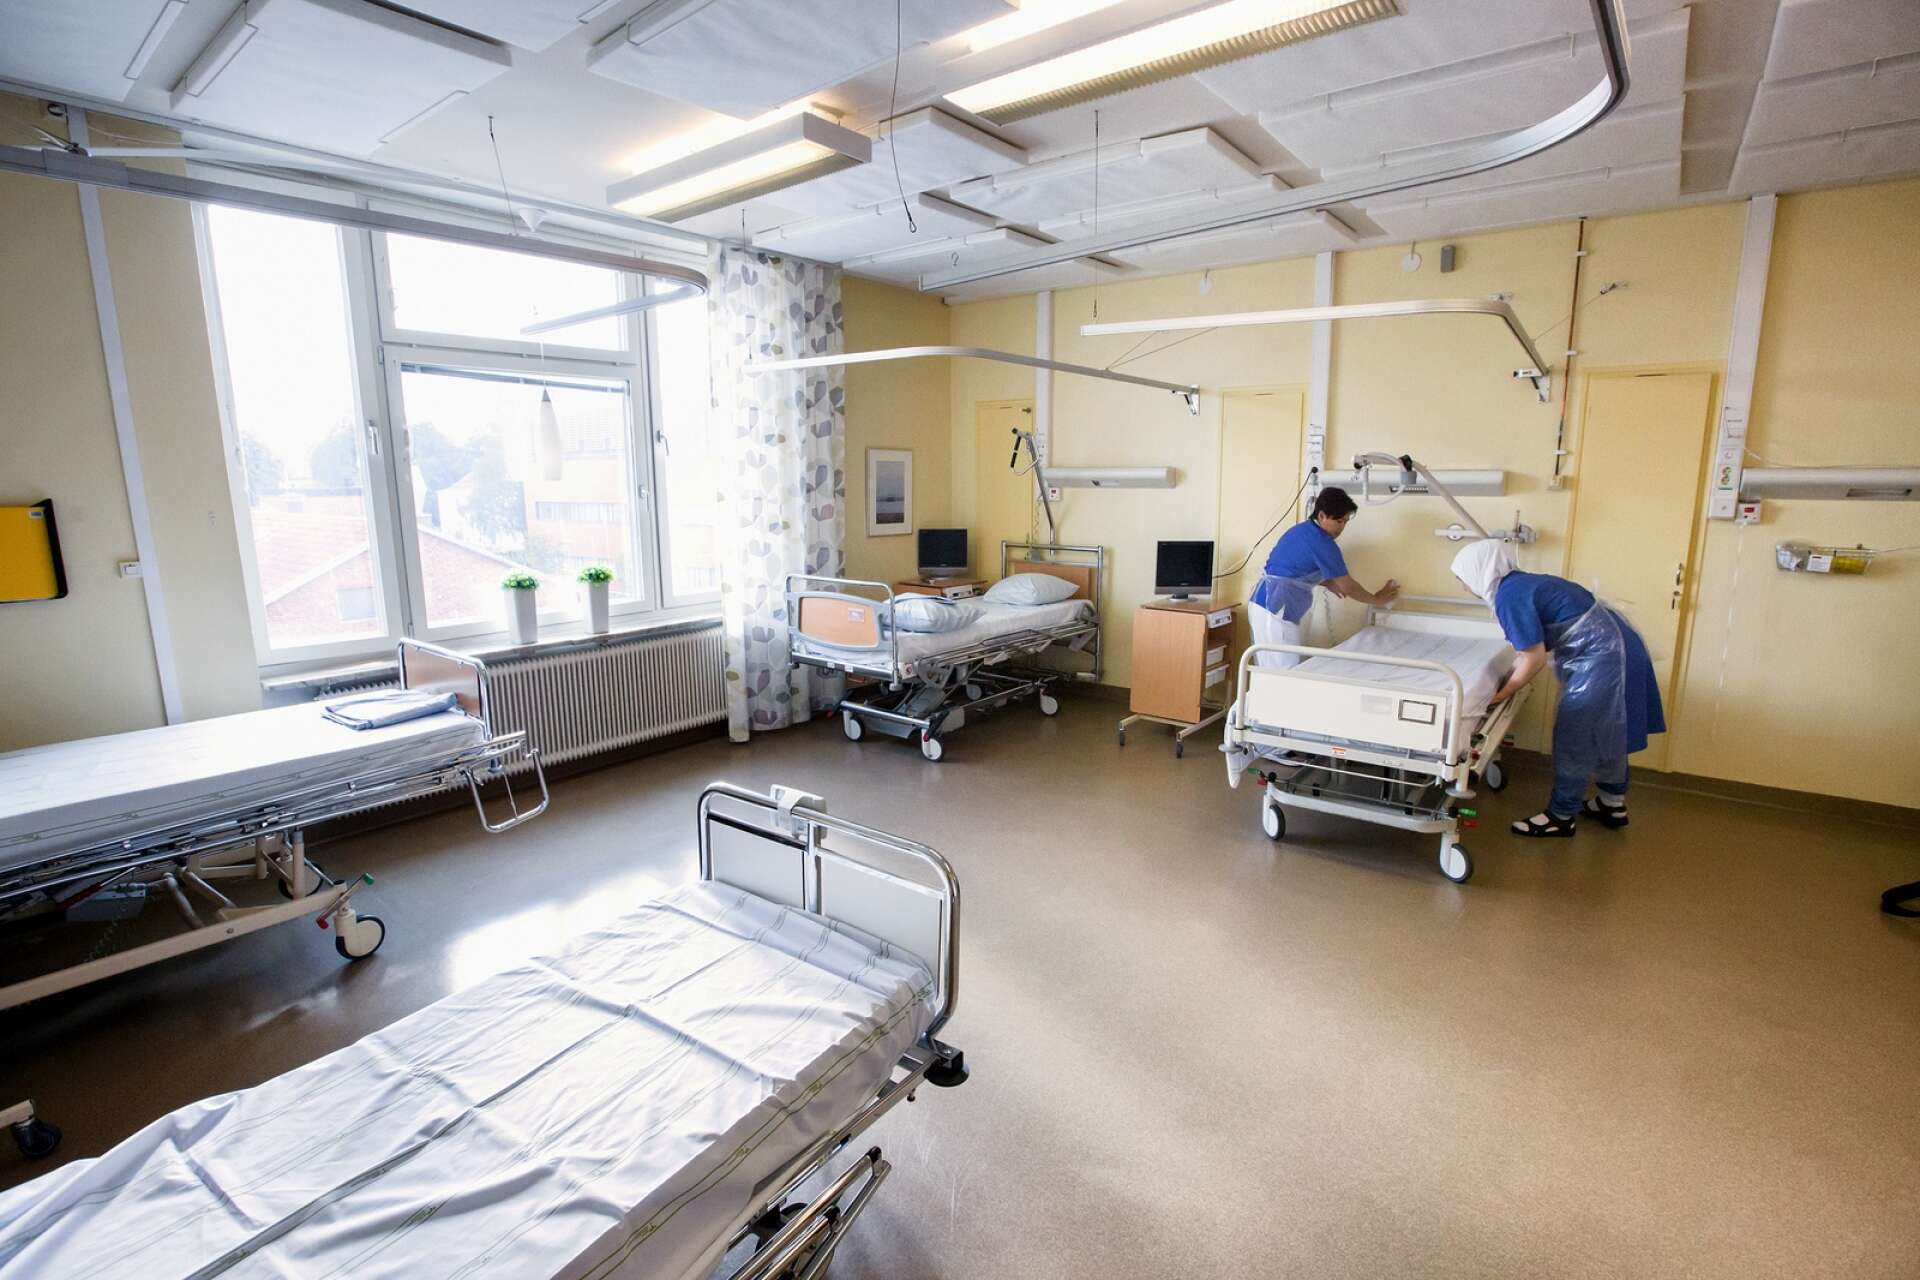 Flera av vårdavdelningarna på sjukhuset i Lidköping anses vara uttjänta, med bland annat undermålig ventilation. (Bilden tagen i ett annat sammanhang och vårdsalen har ingen direkt koppling till artikeln)